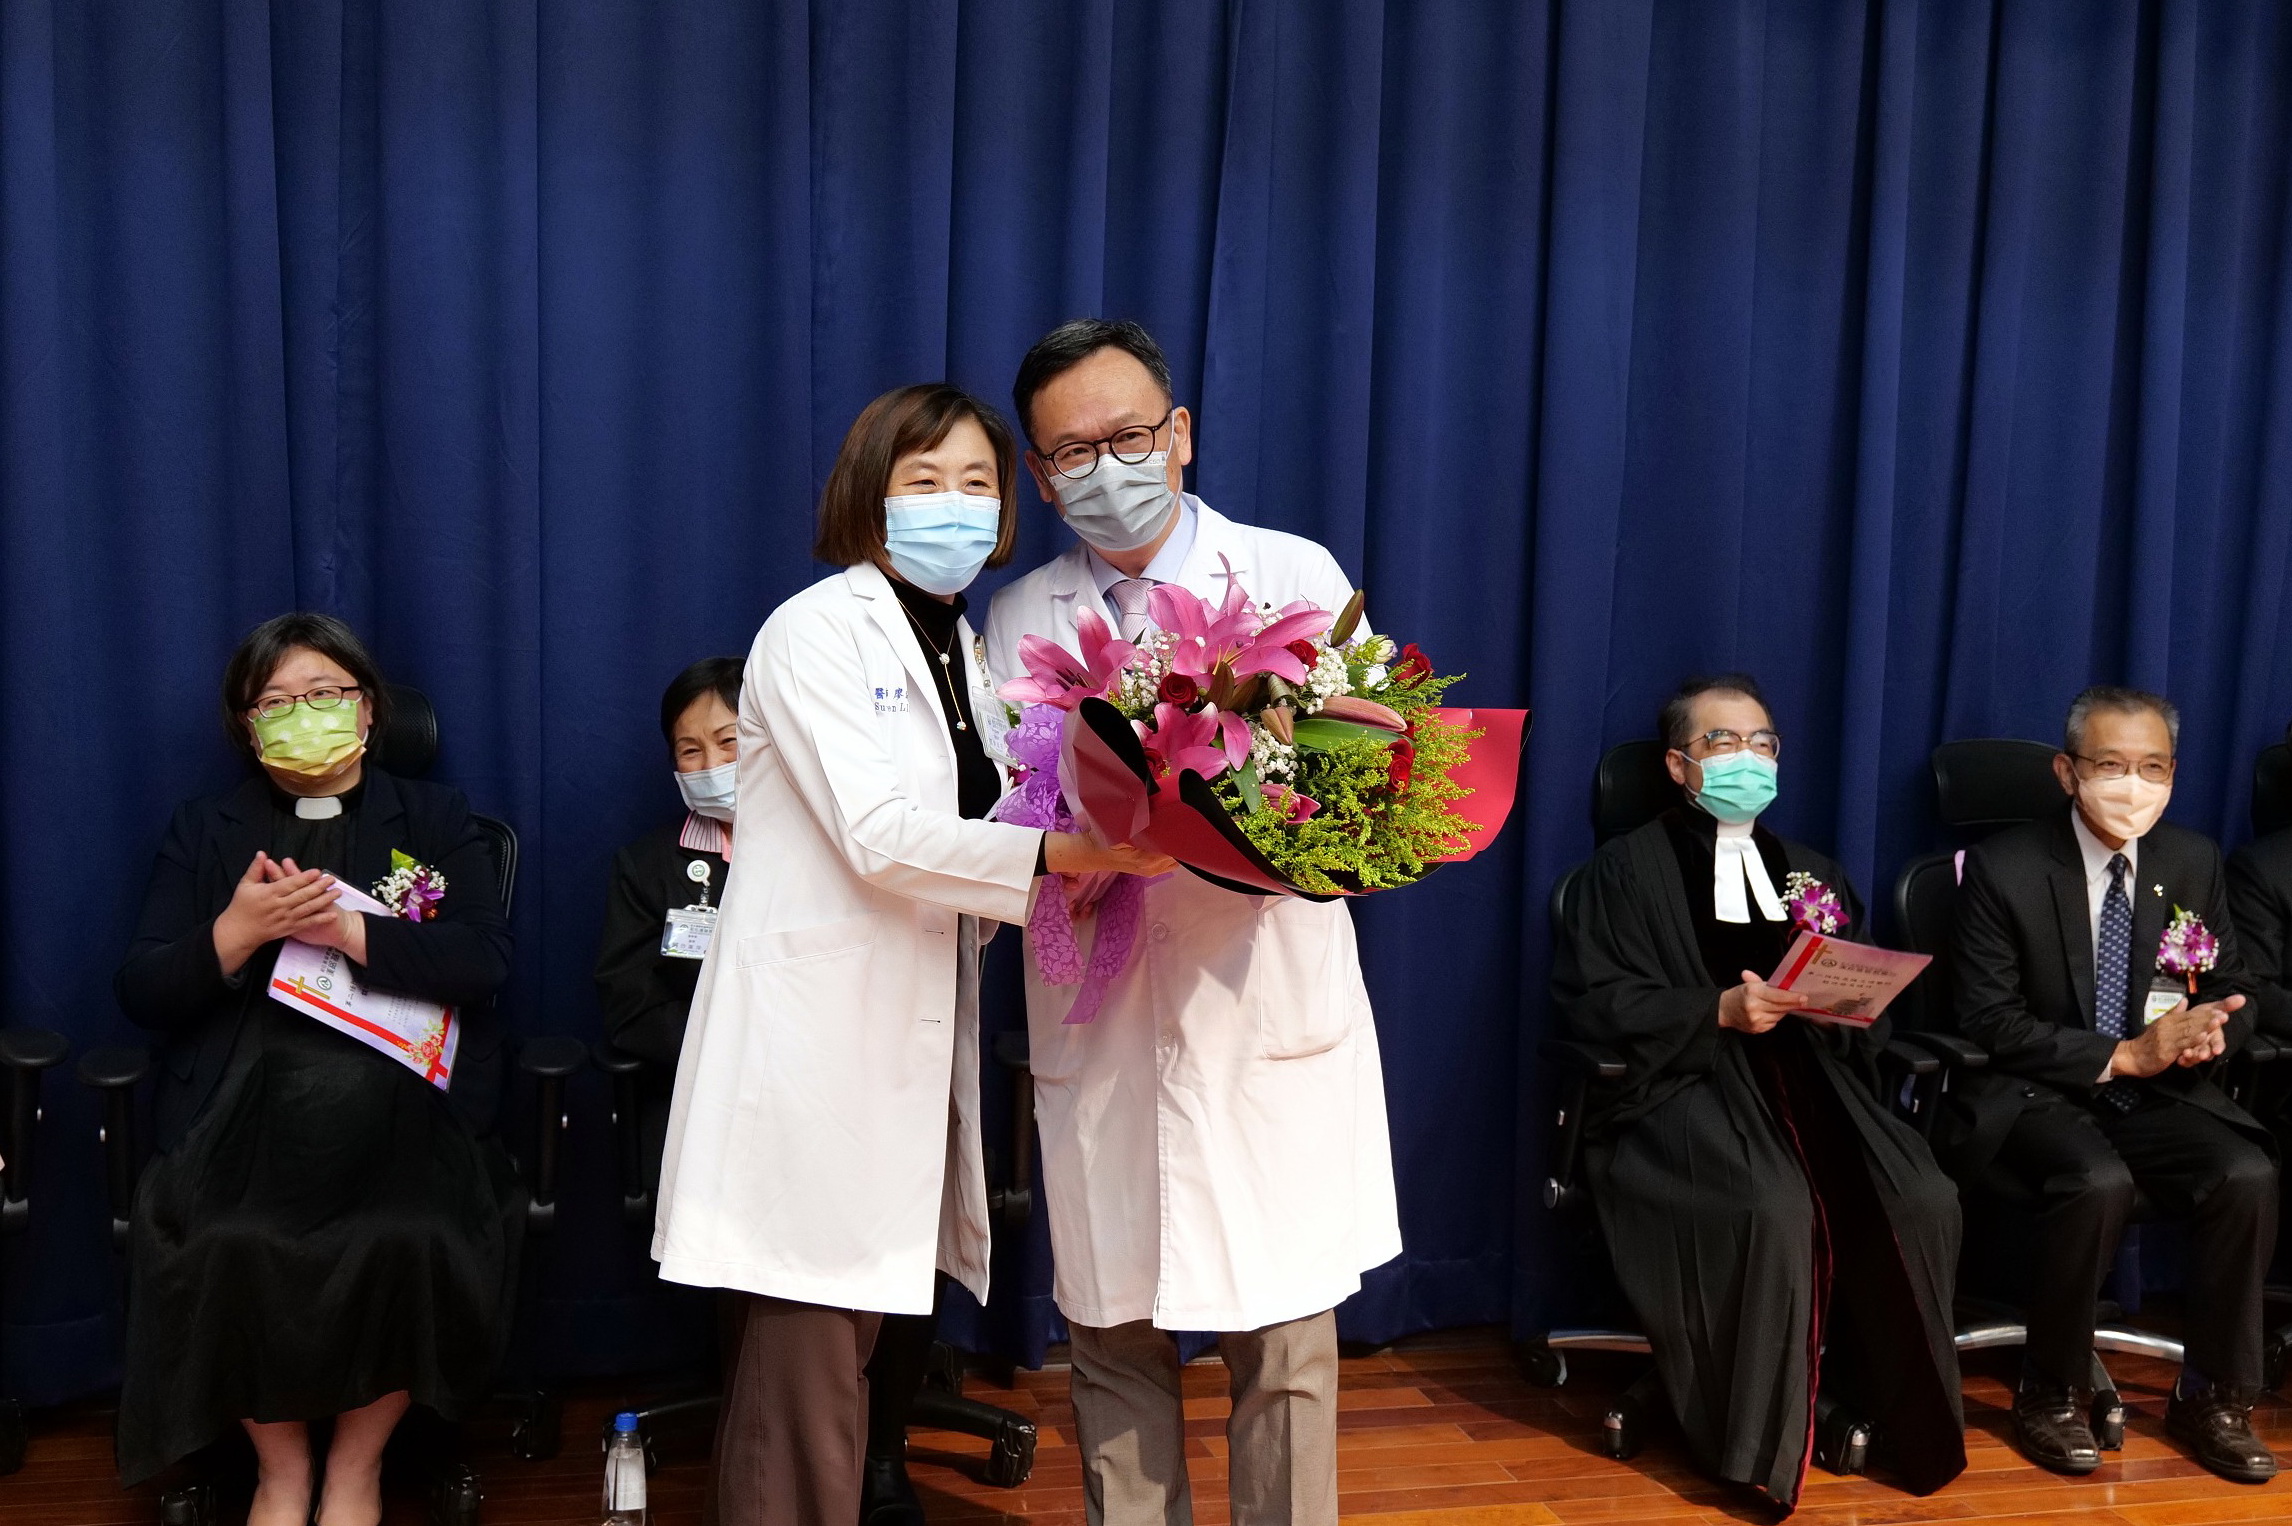 彰基復健醫學部主任廖淑芬醫師致贈鮮花，並為院長老公獻上滿滿的祝福。